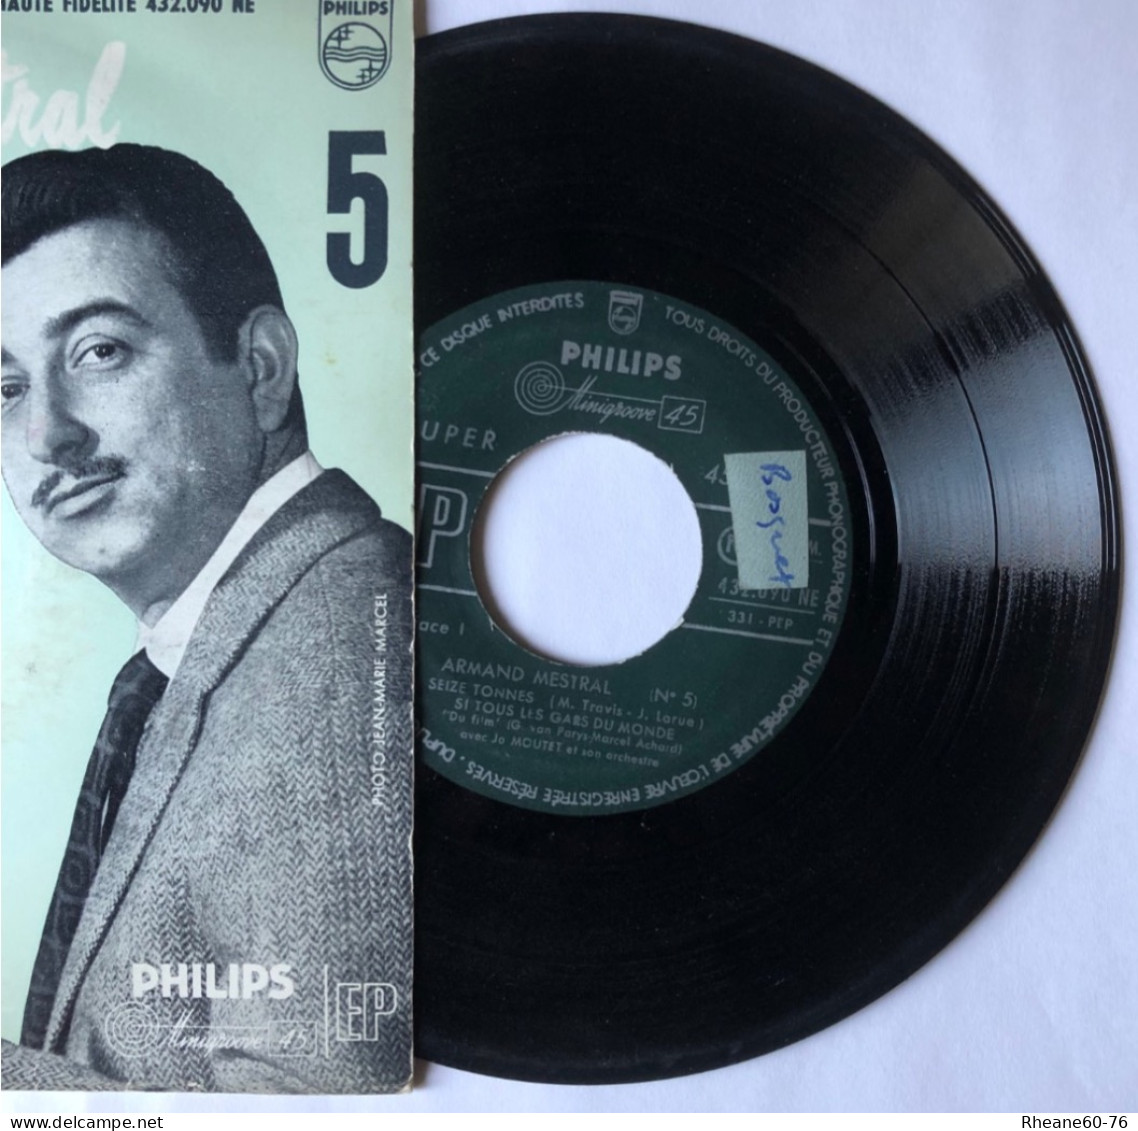 Philips 432.090 NE - 45T EP - Armand Mestral Avec Jo Moutet Et Son Orchestre - Microsillon Médium Haute Fidélité - Formats Spéciaux